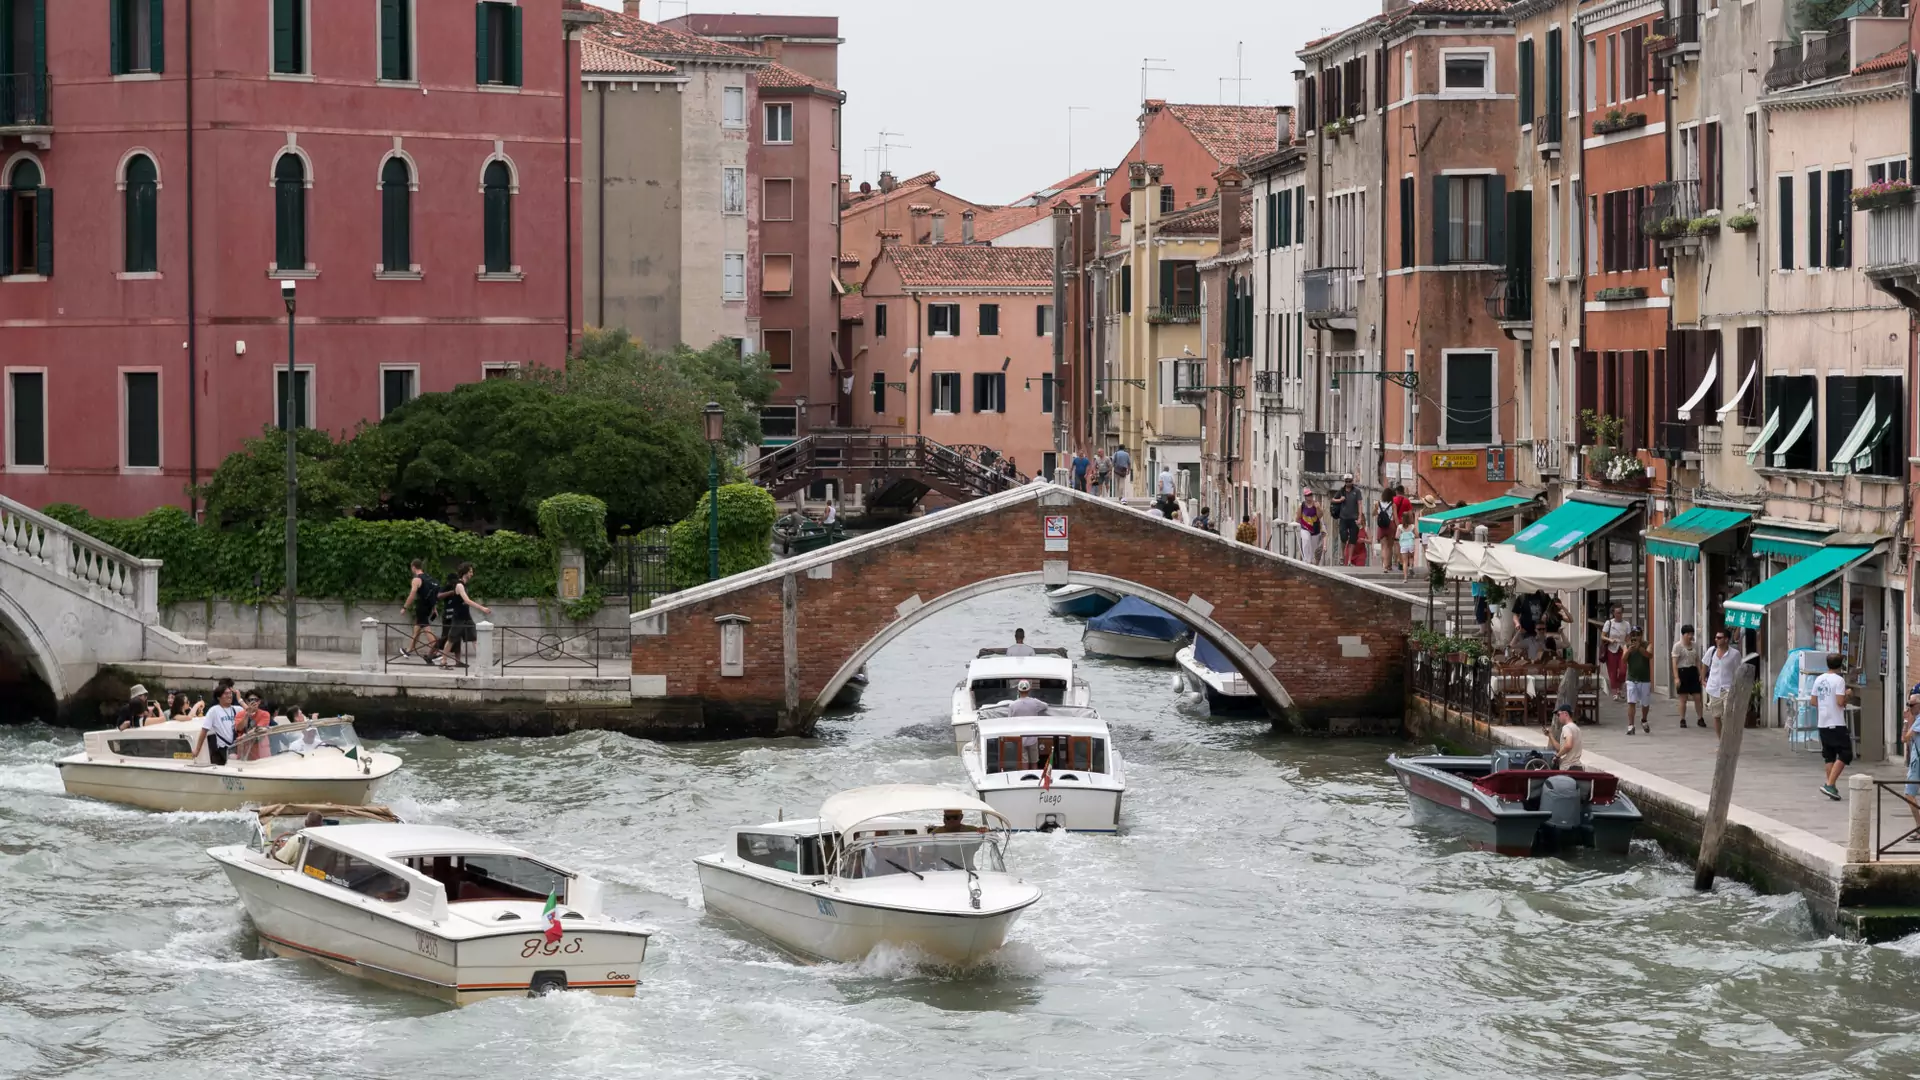 Wenecja walczy z turystami. Opłaty i nietypowy system rezerwacji wizyt